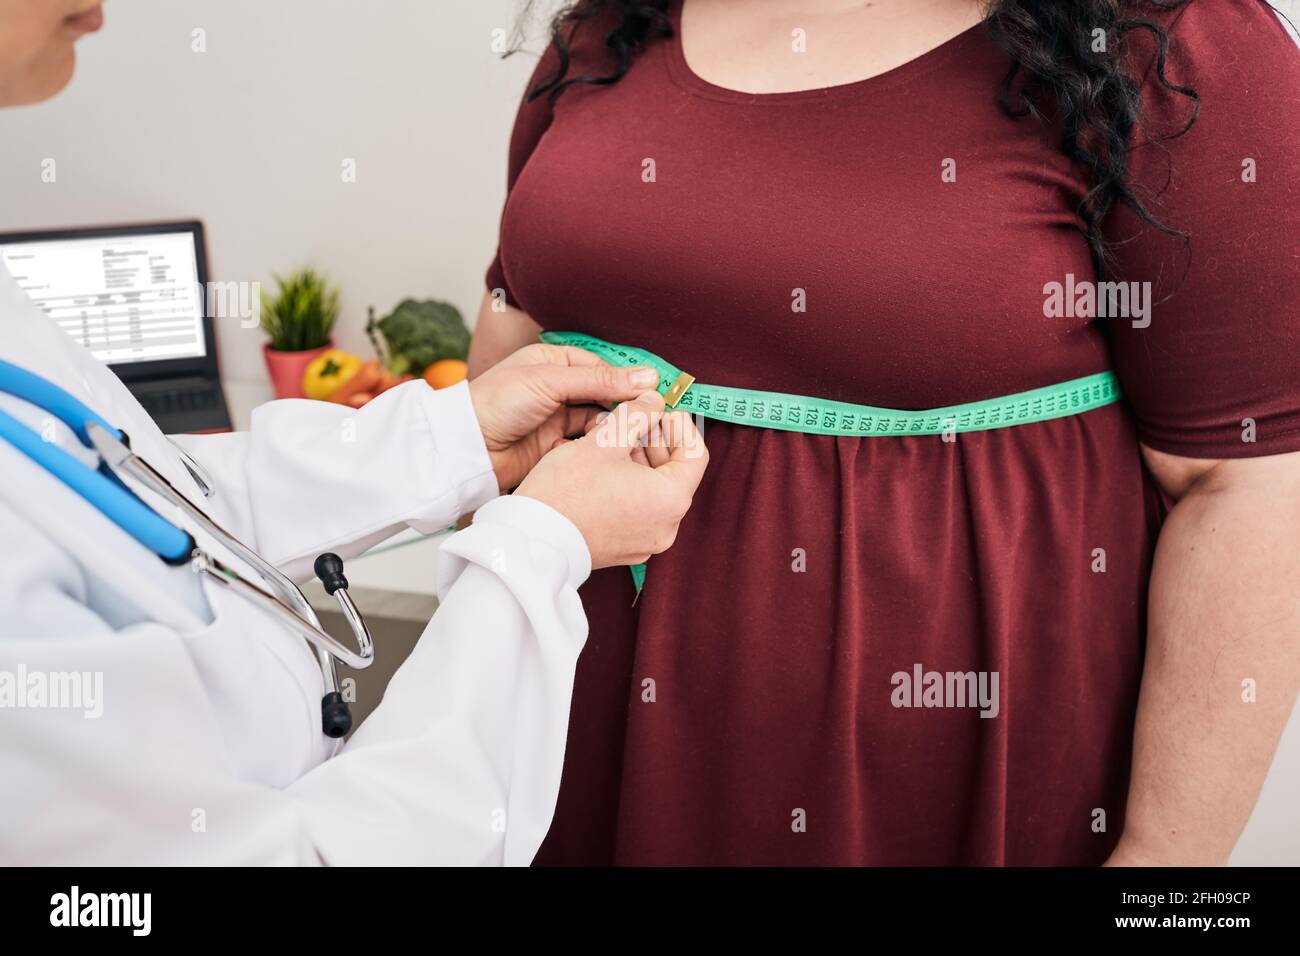 Obesità, peso malsano. Nutrizionista ispezionando la vita di una donna usando un metro a nastro per prescrivere una dieta di perdita di peso Foto Stock